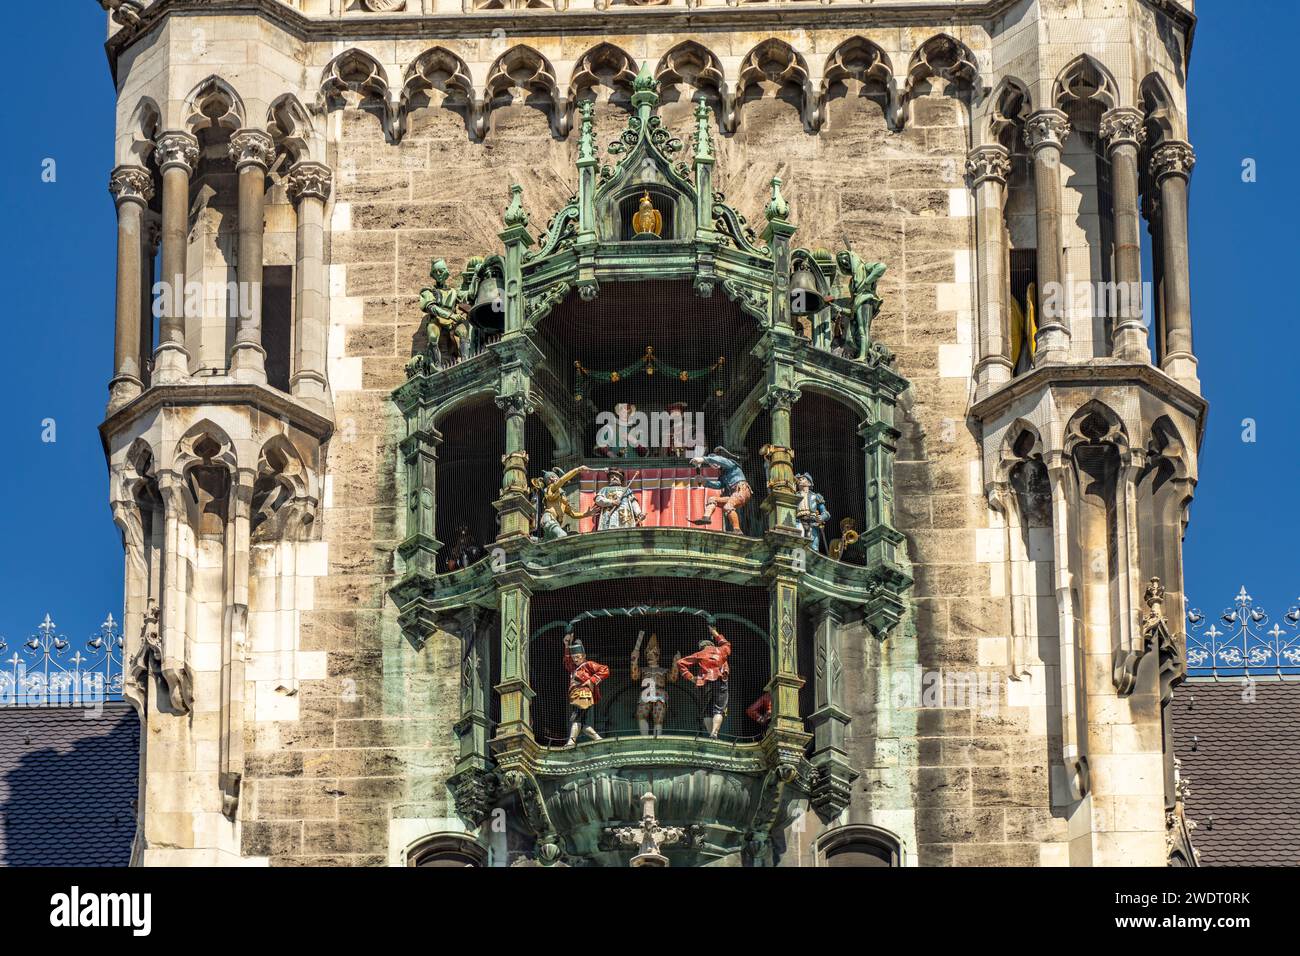 DAS Glockenspiel am neuen Rathaus in Muenchen, Bayern, Deutschland | le carillon du nouvel hôtel de ville de Munich, Bavière, Allemagne Banque D'Images